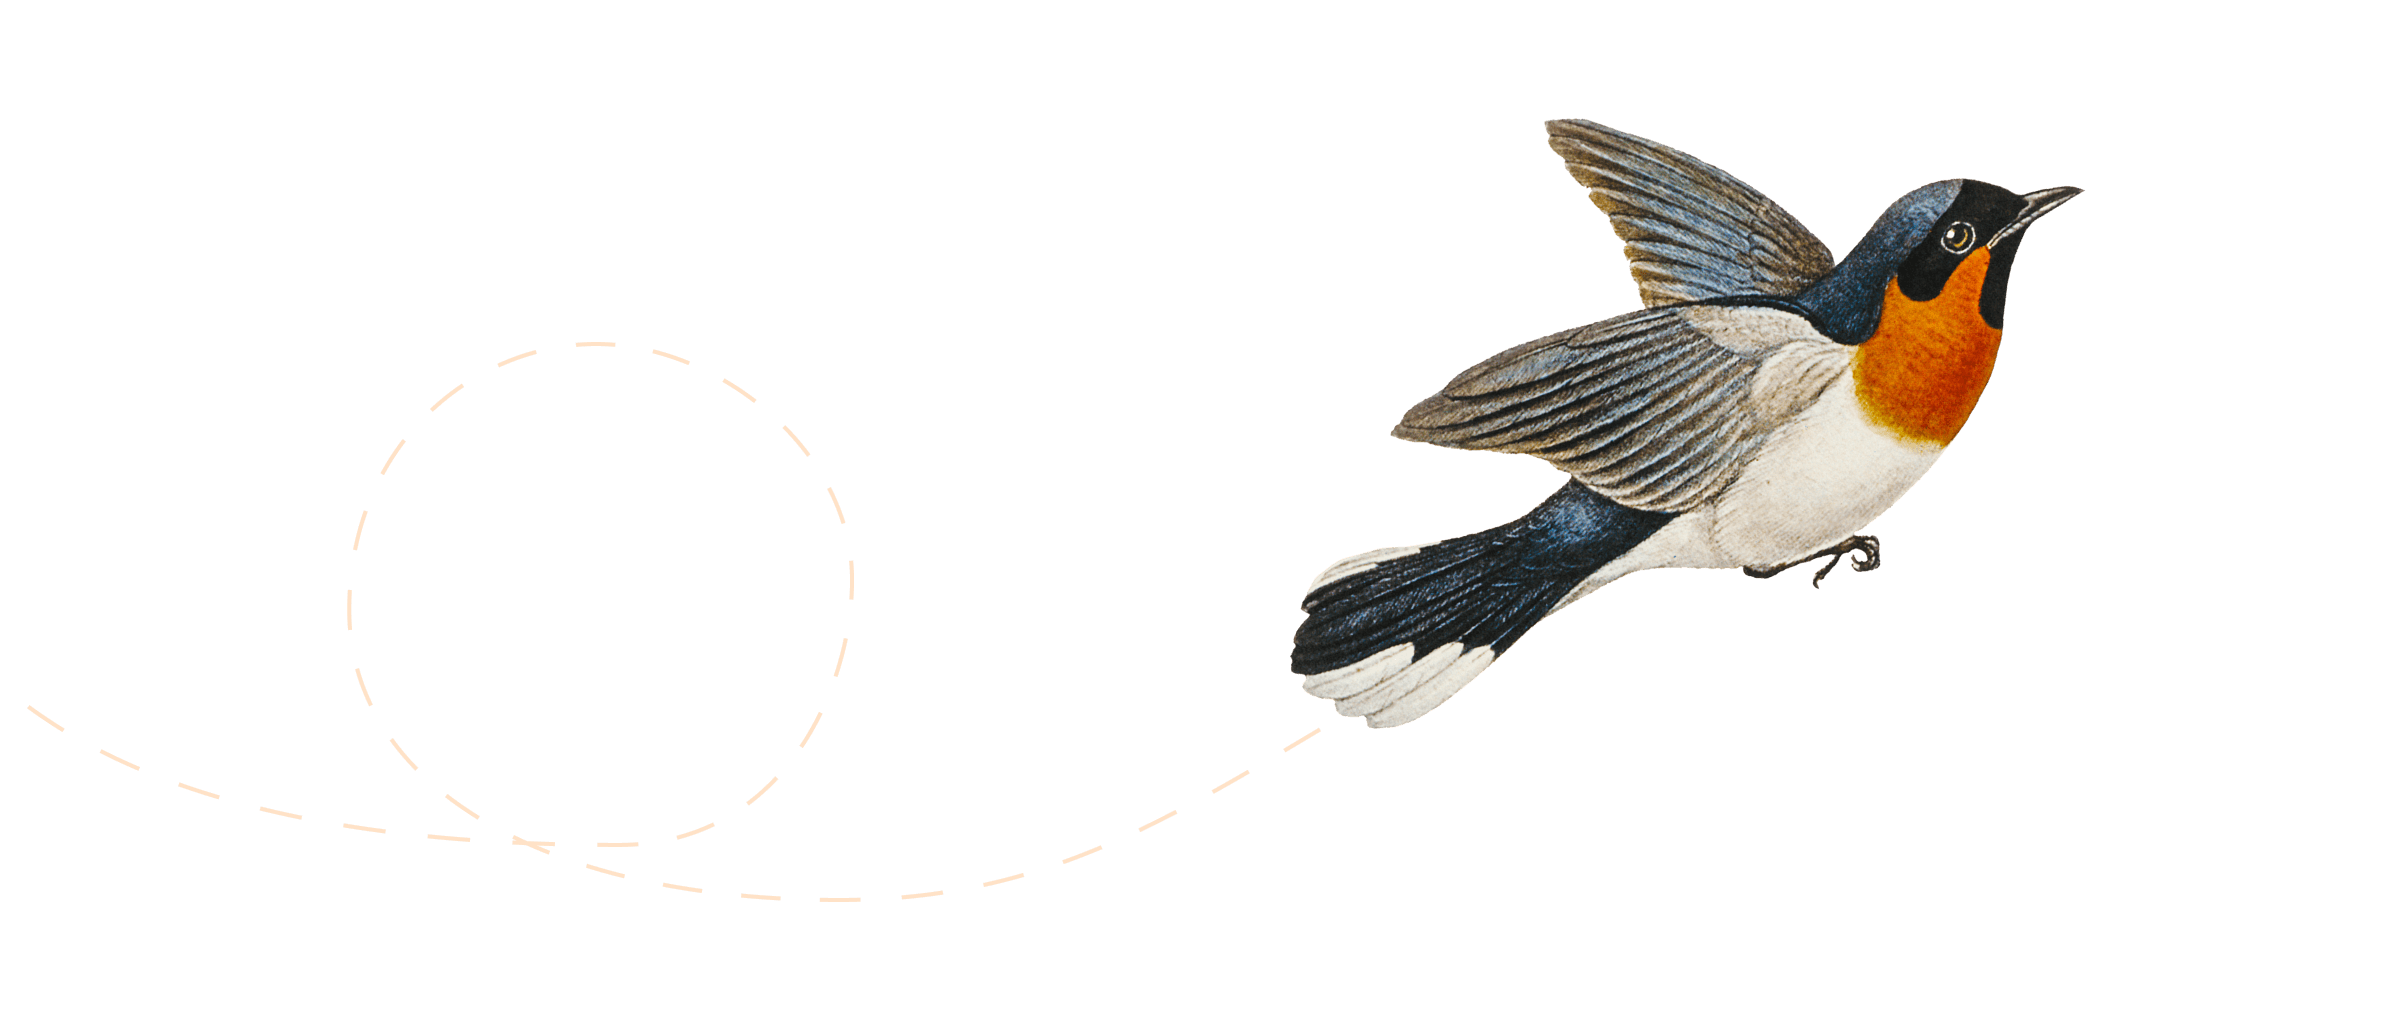 Ilustração de um pássaro voando.